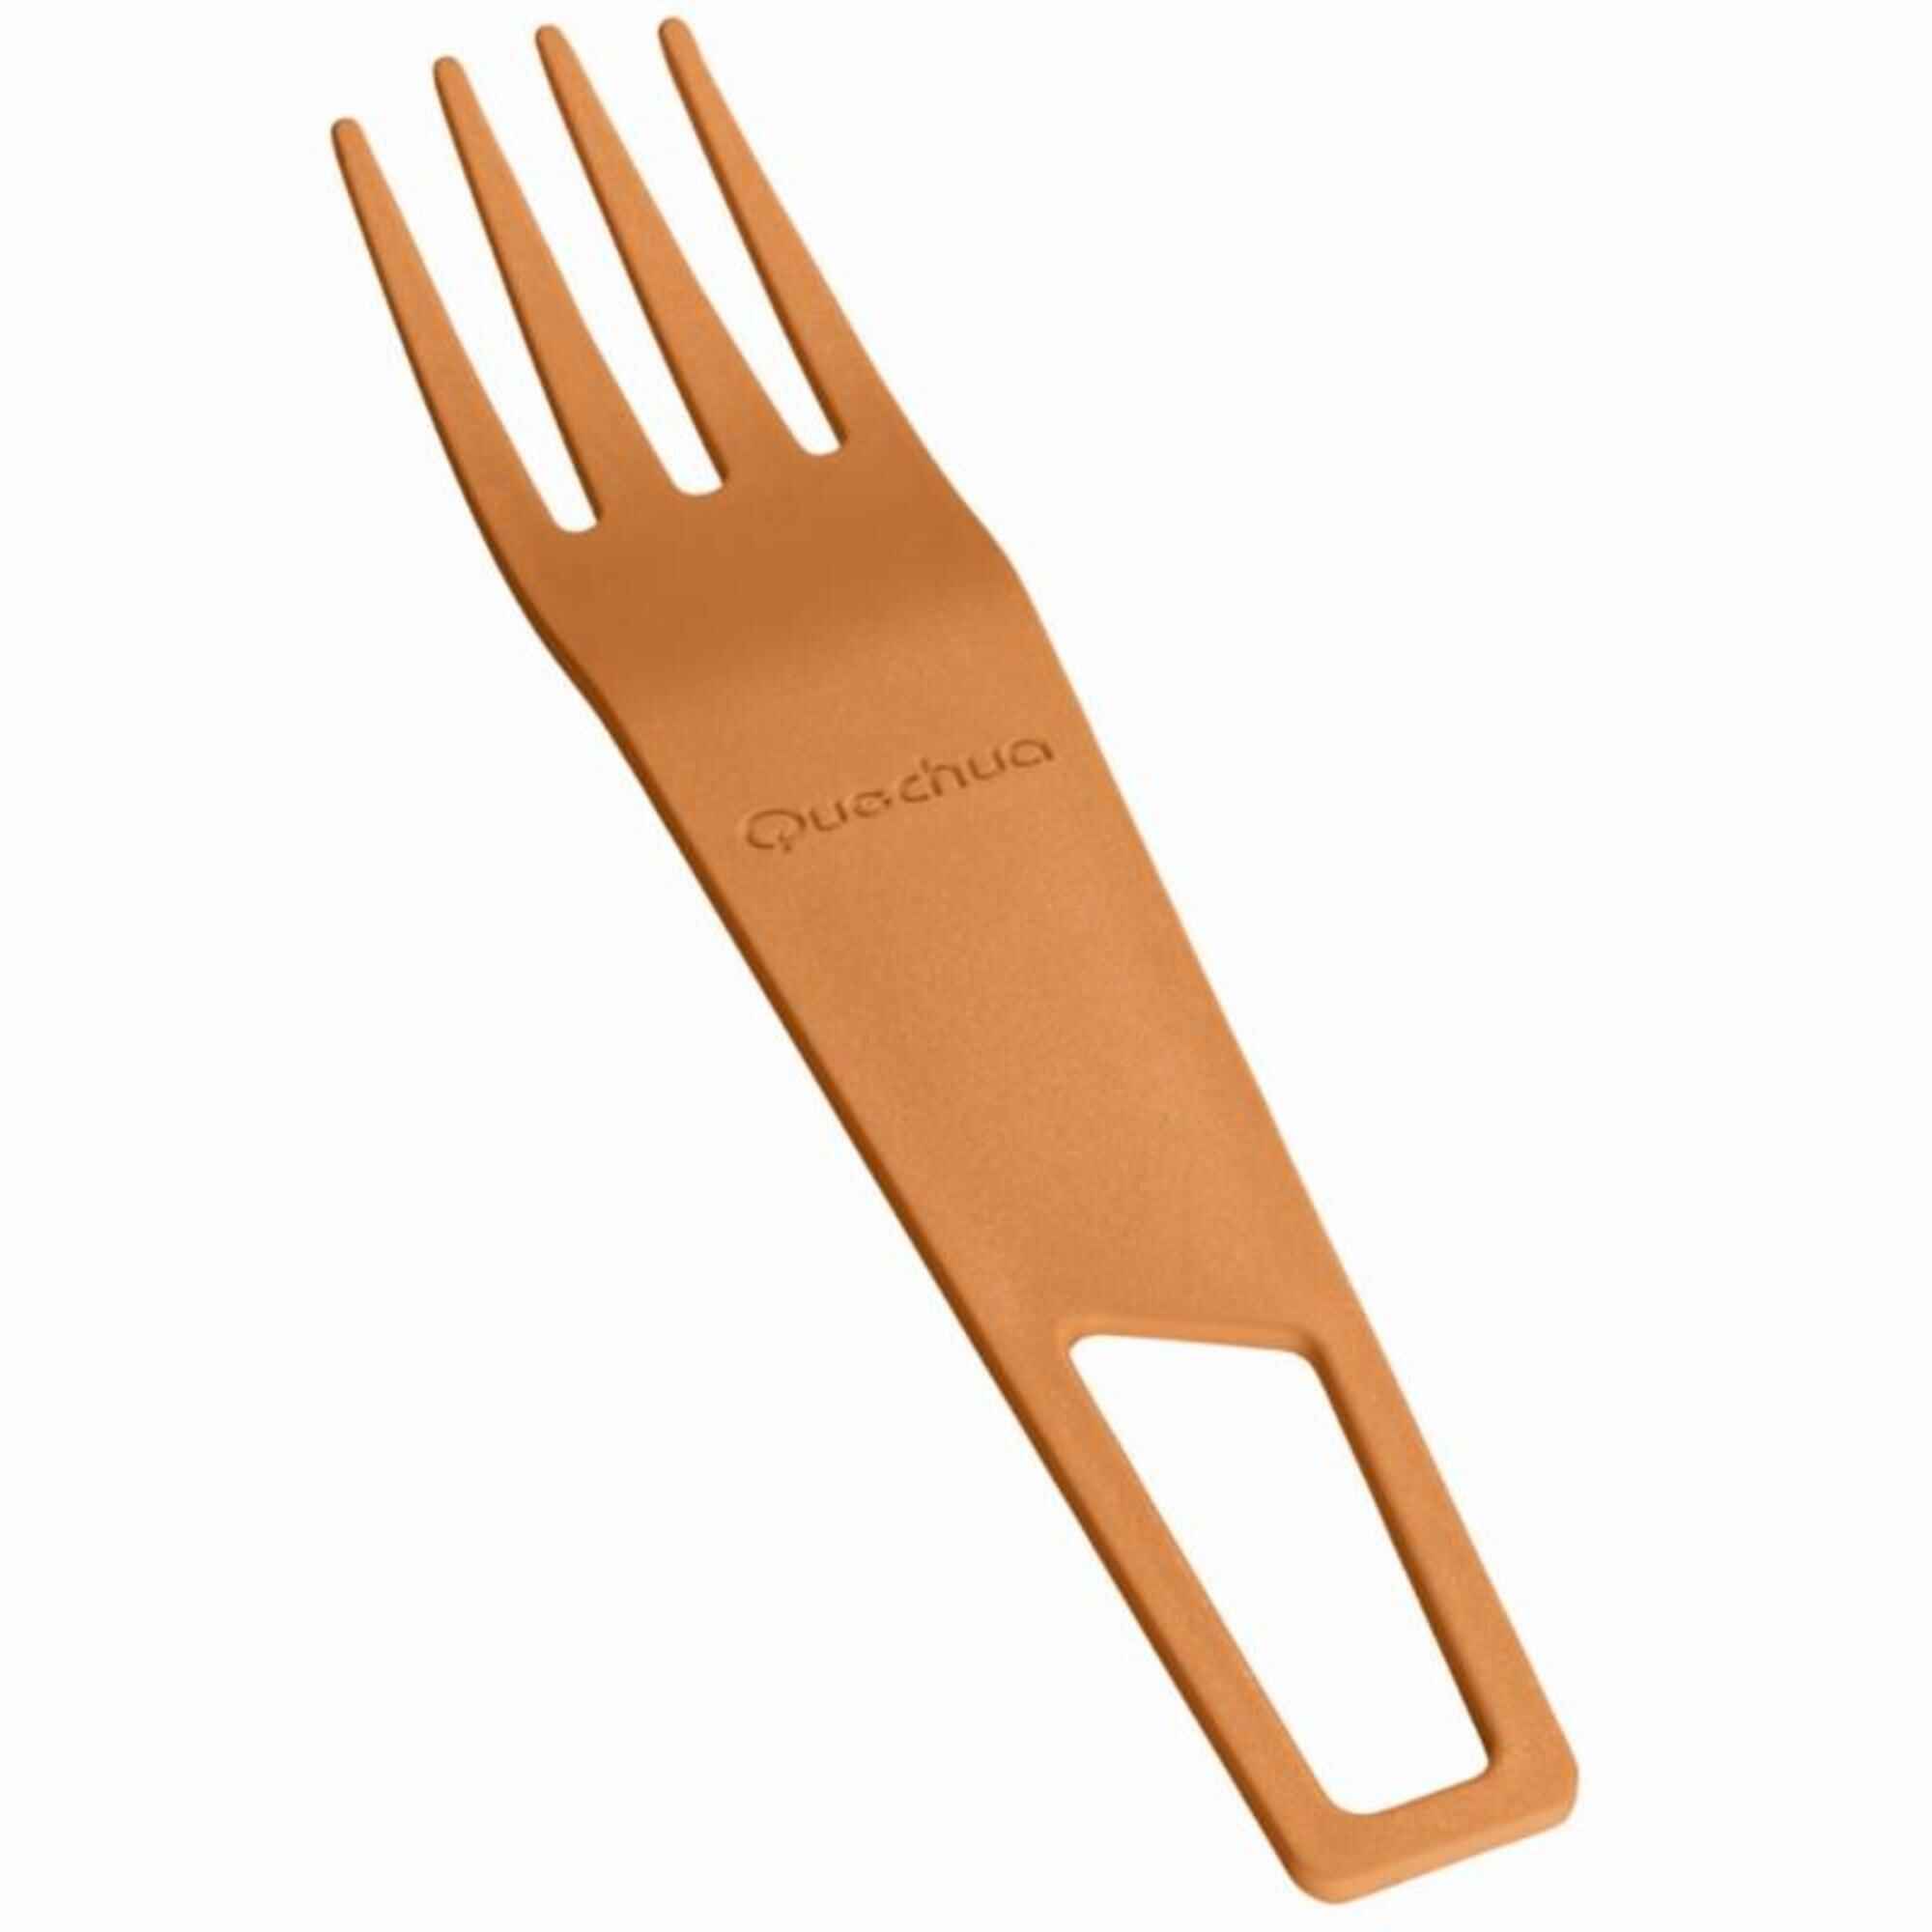 Non-scratch fork hiking utensils orange